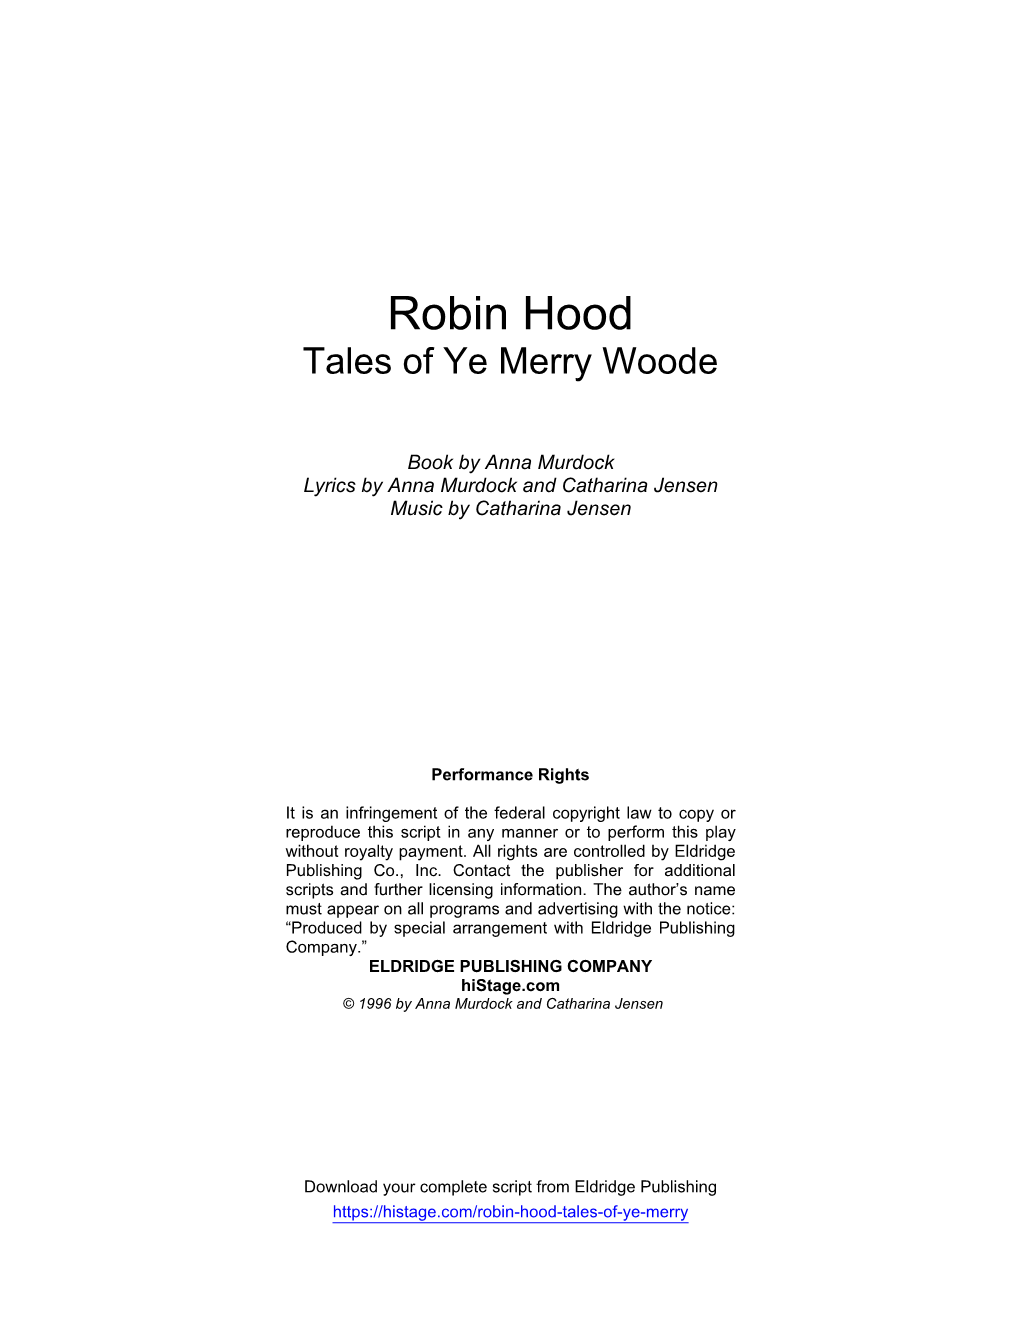 Robin Hood Tales of Ye Merry Woode